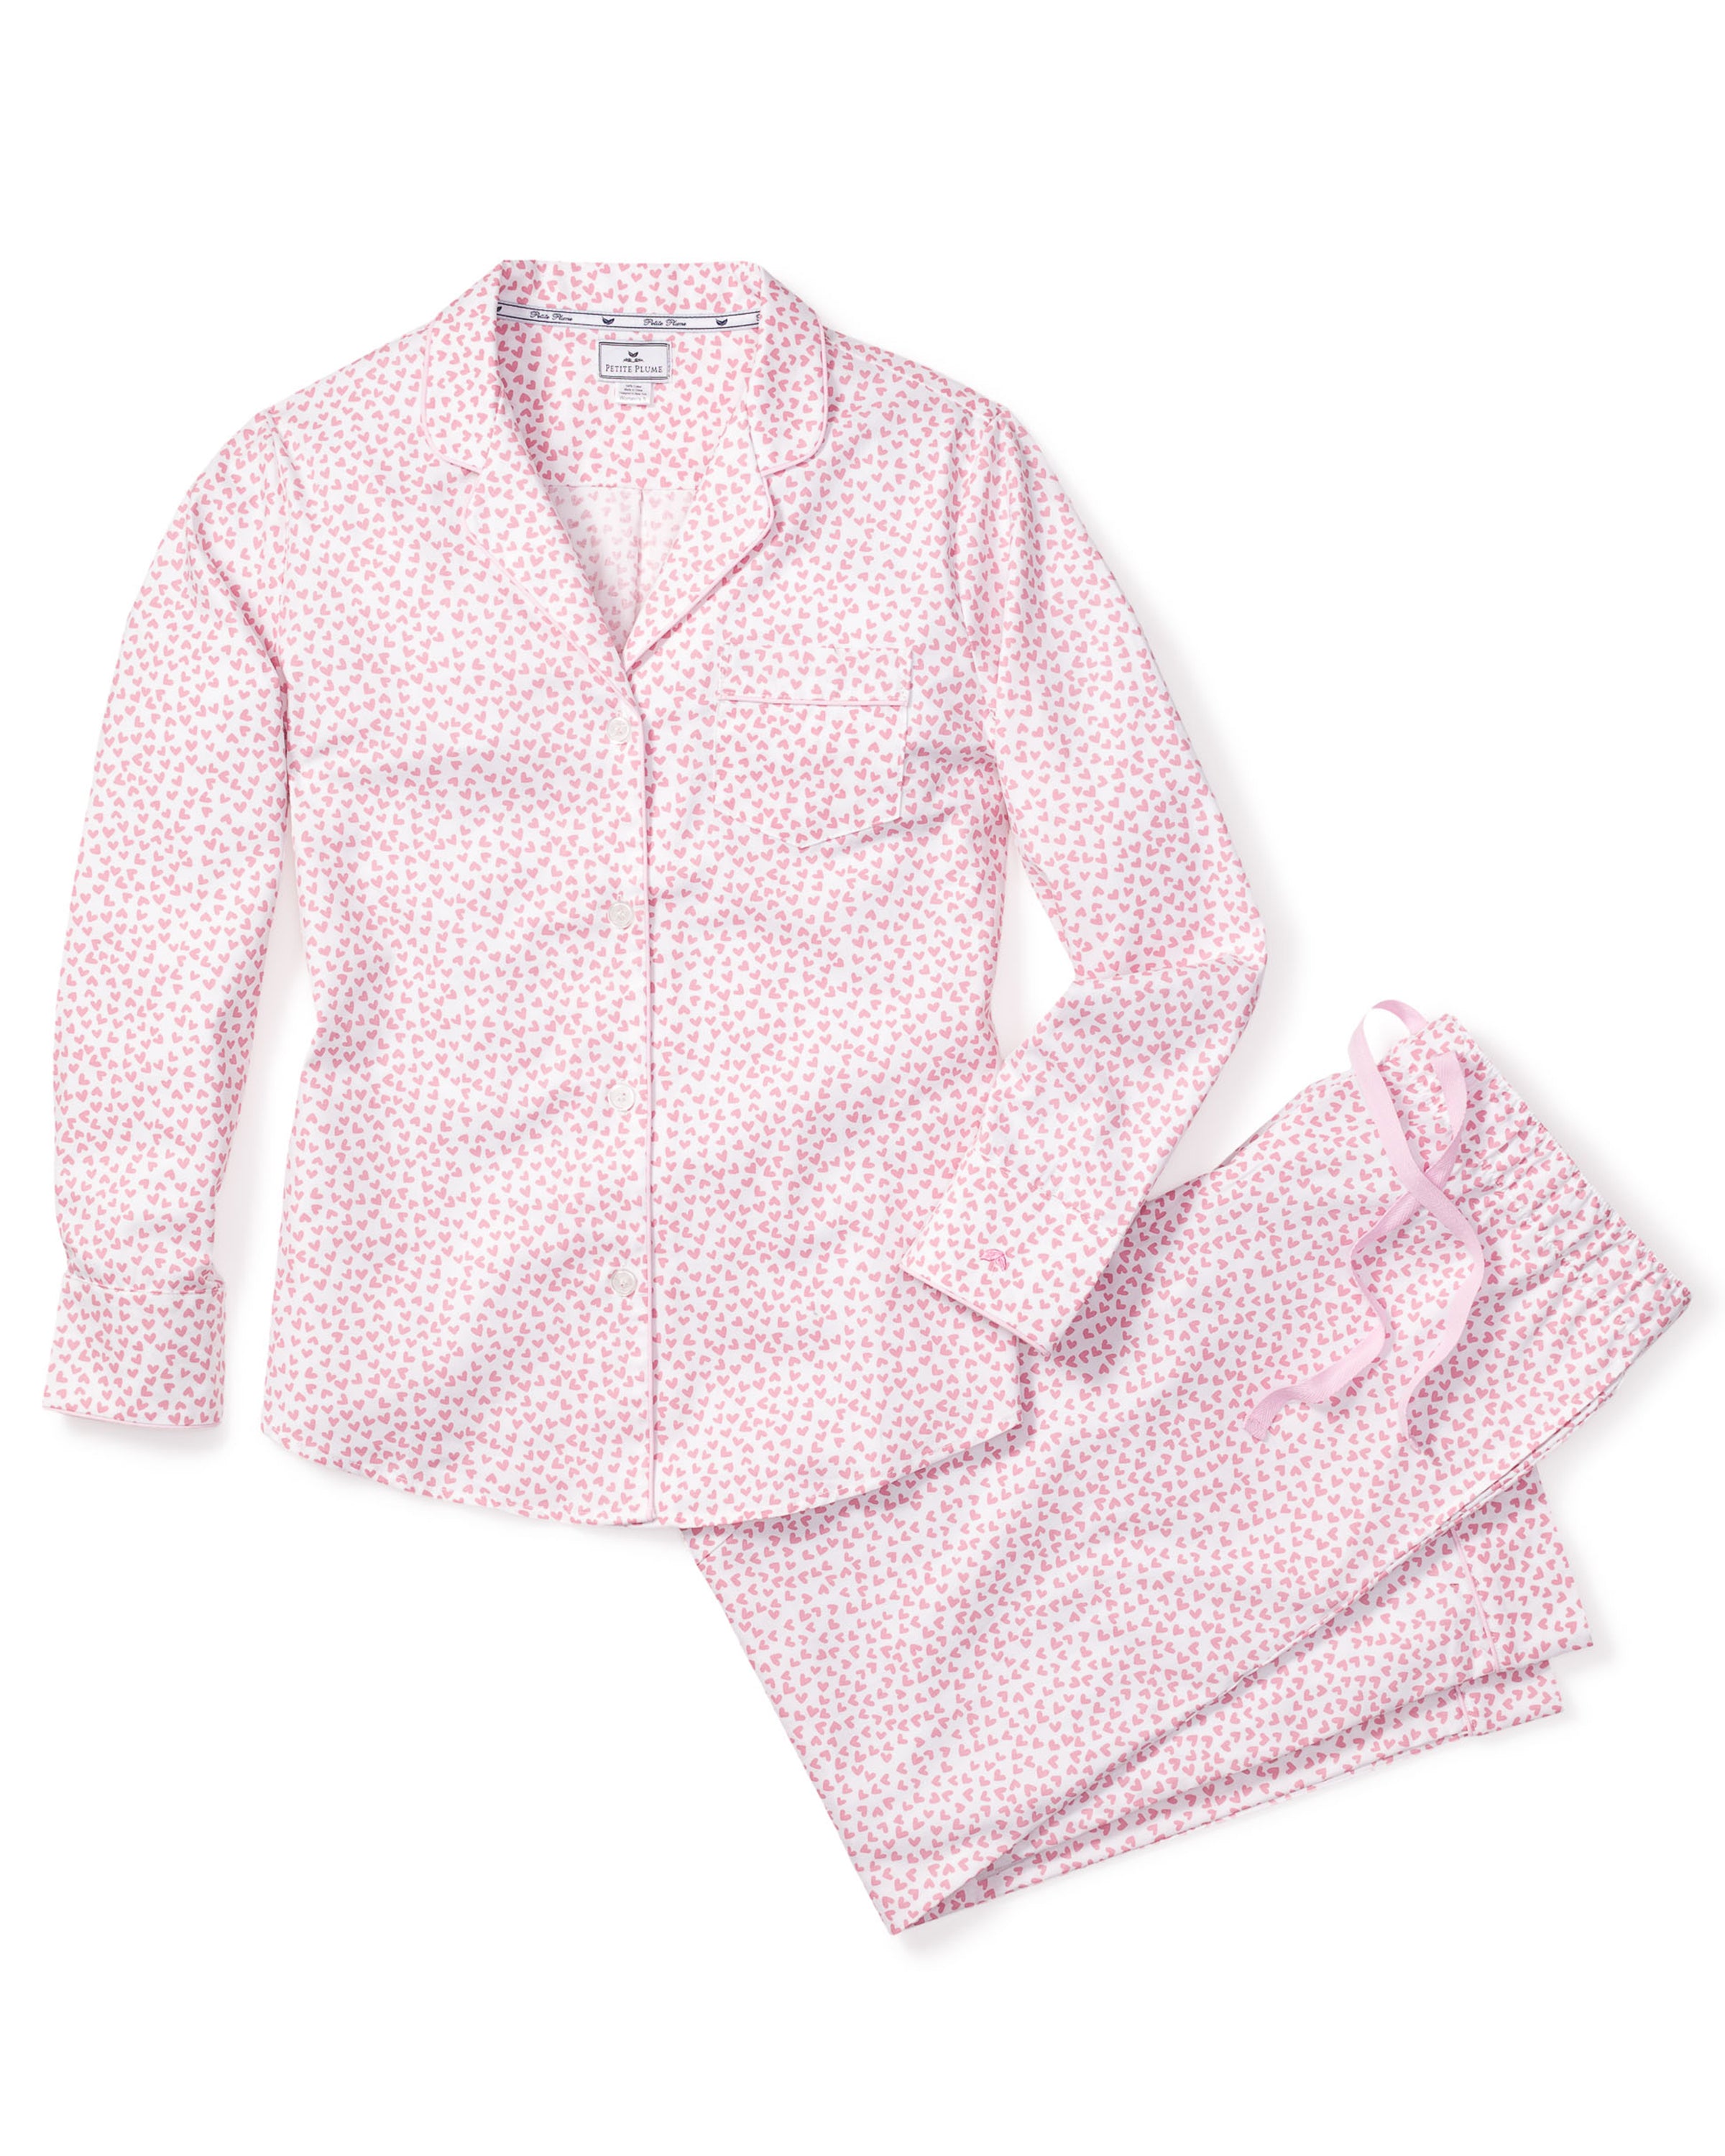 Women's Twill Pajama Set in Sweethearts